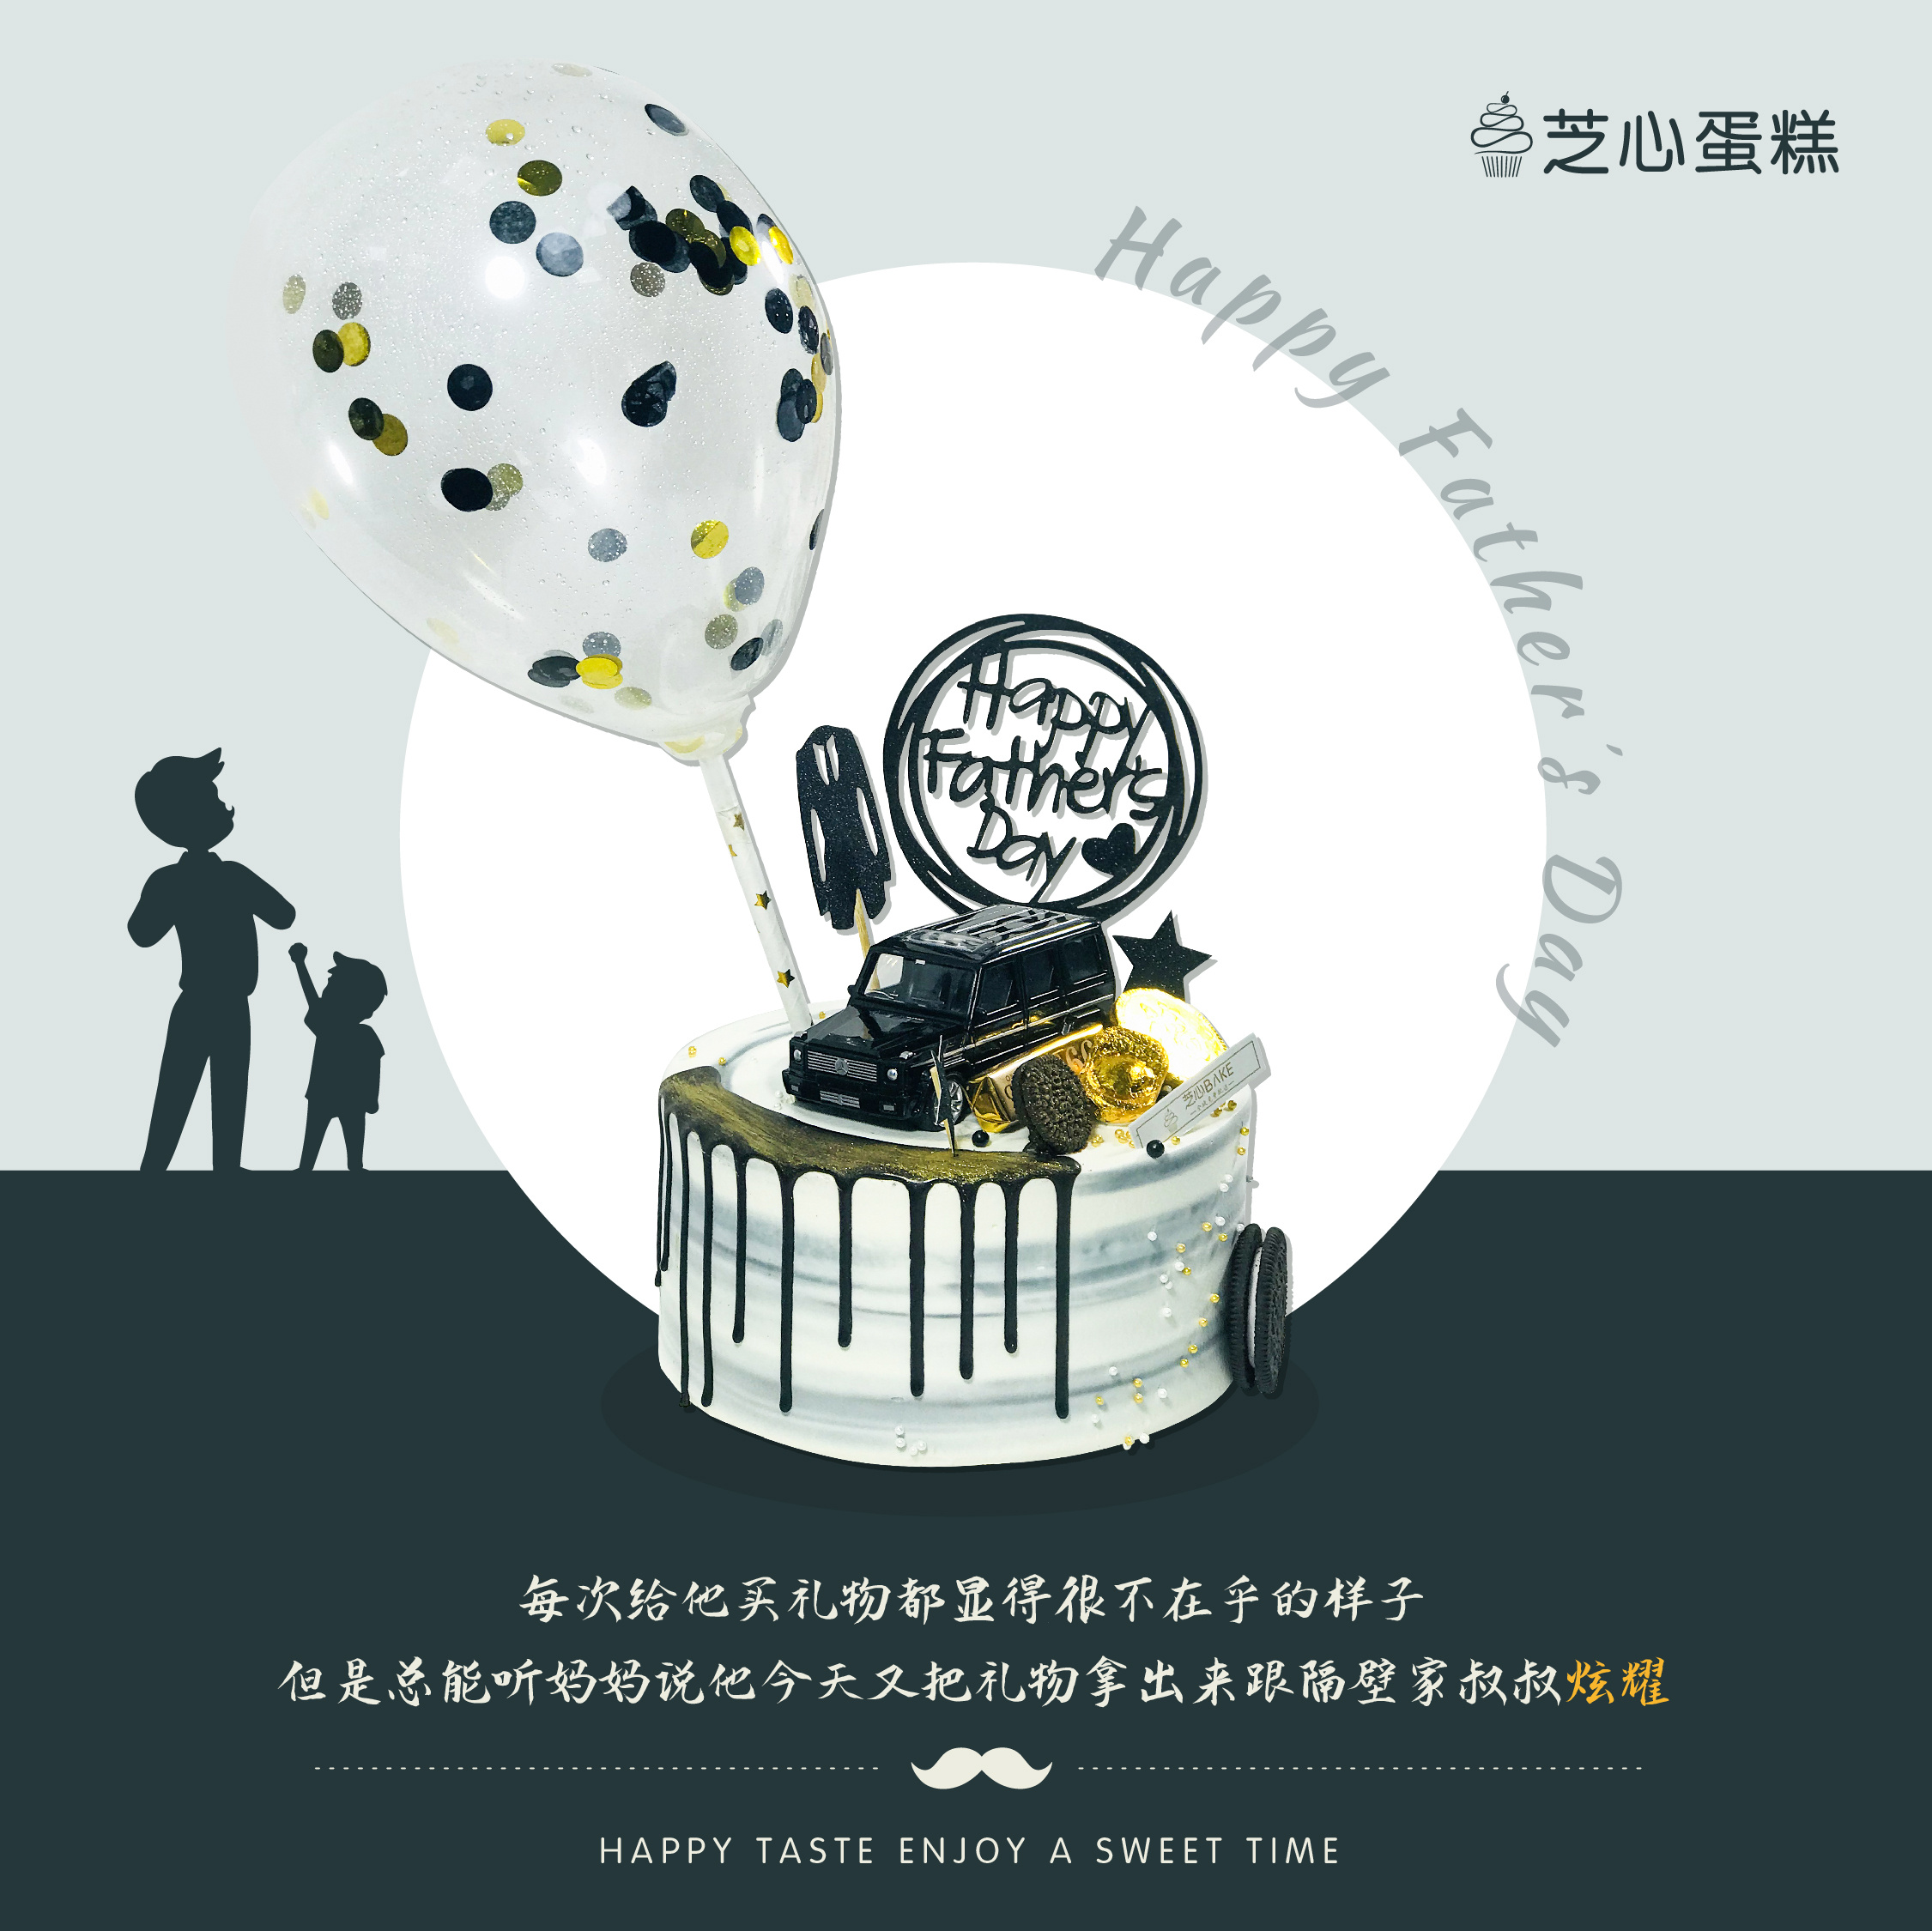 最新老爸生日蛋糕图片-图库-五毛网